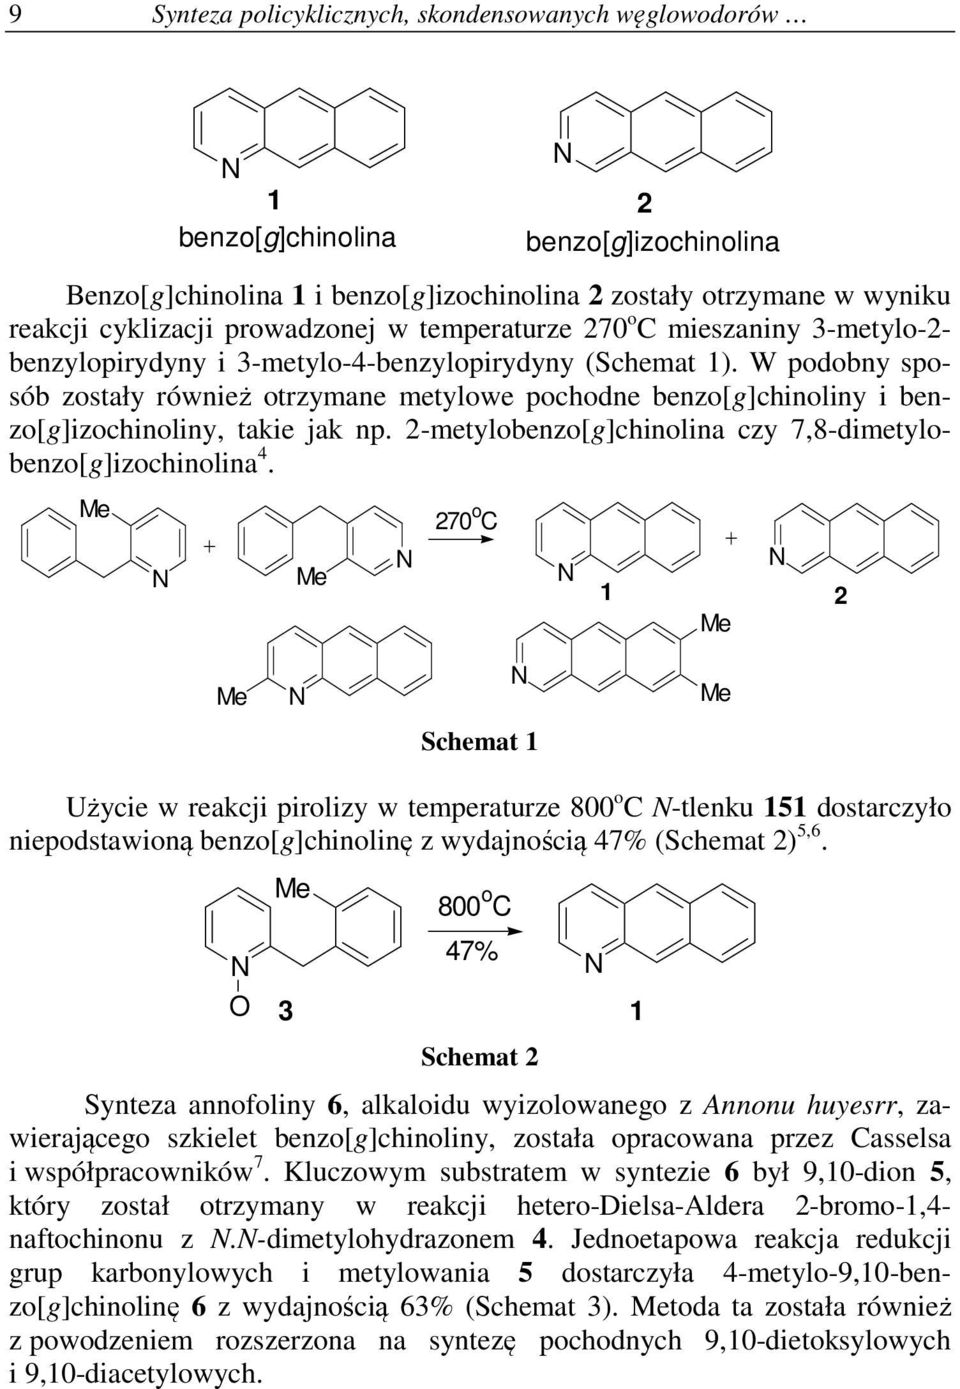 W podobny sposób zostały również otrzymane metylowe pochodne benzo[g]chinoliny i benzo[g]izochinoliny, takie jak np. 2-metylobenzo[g]chinolina czy 7,8-dimetylobenzo[g]izochinolina 4.